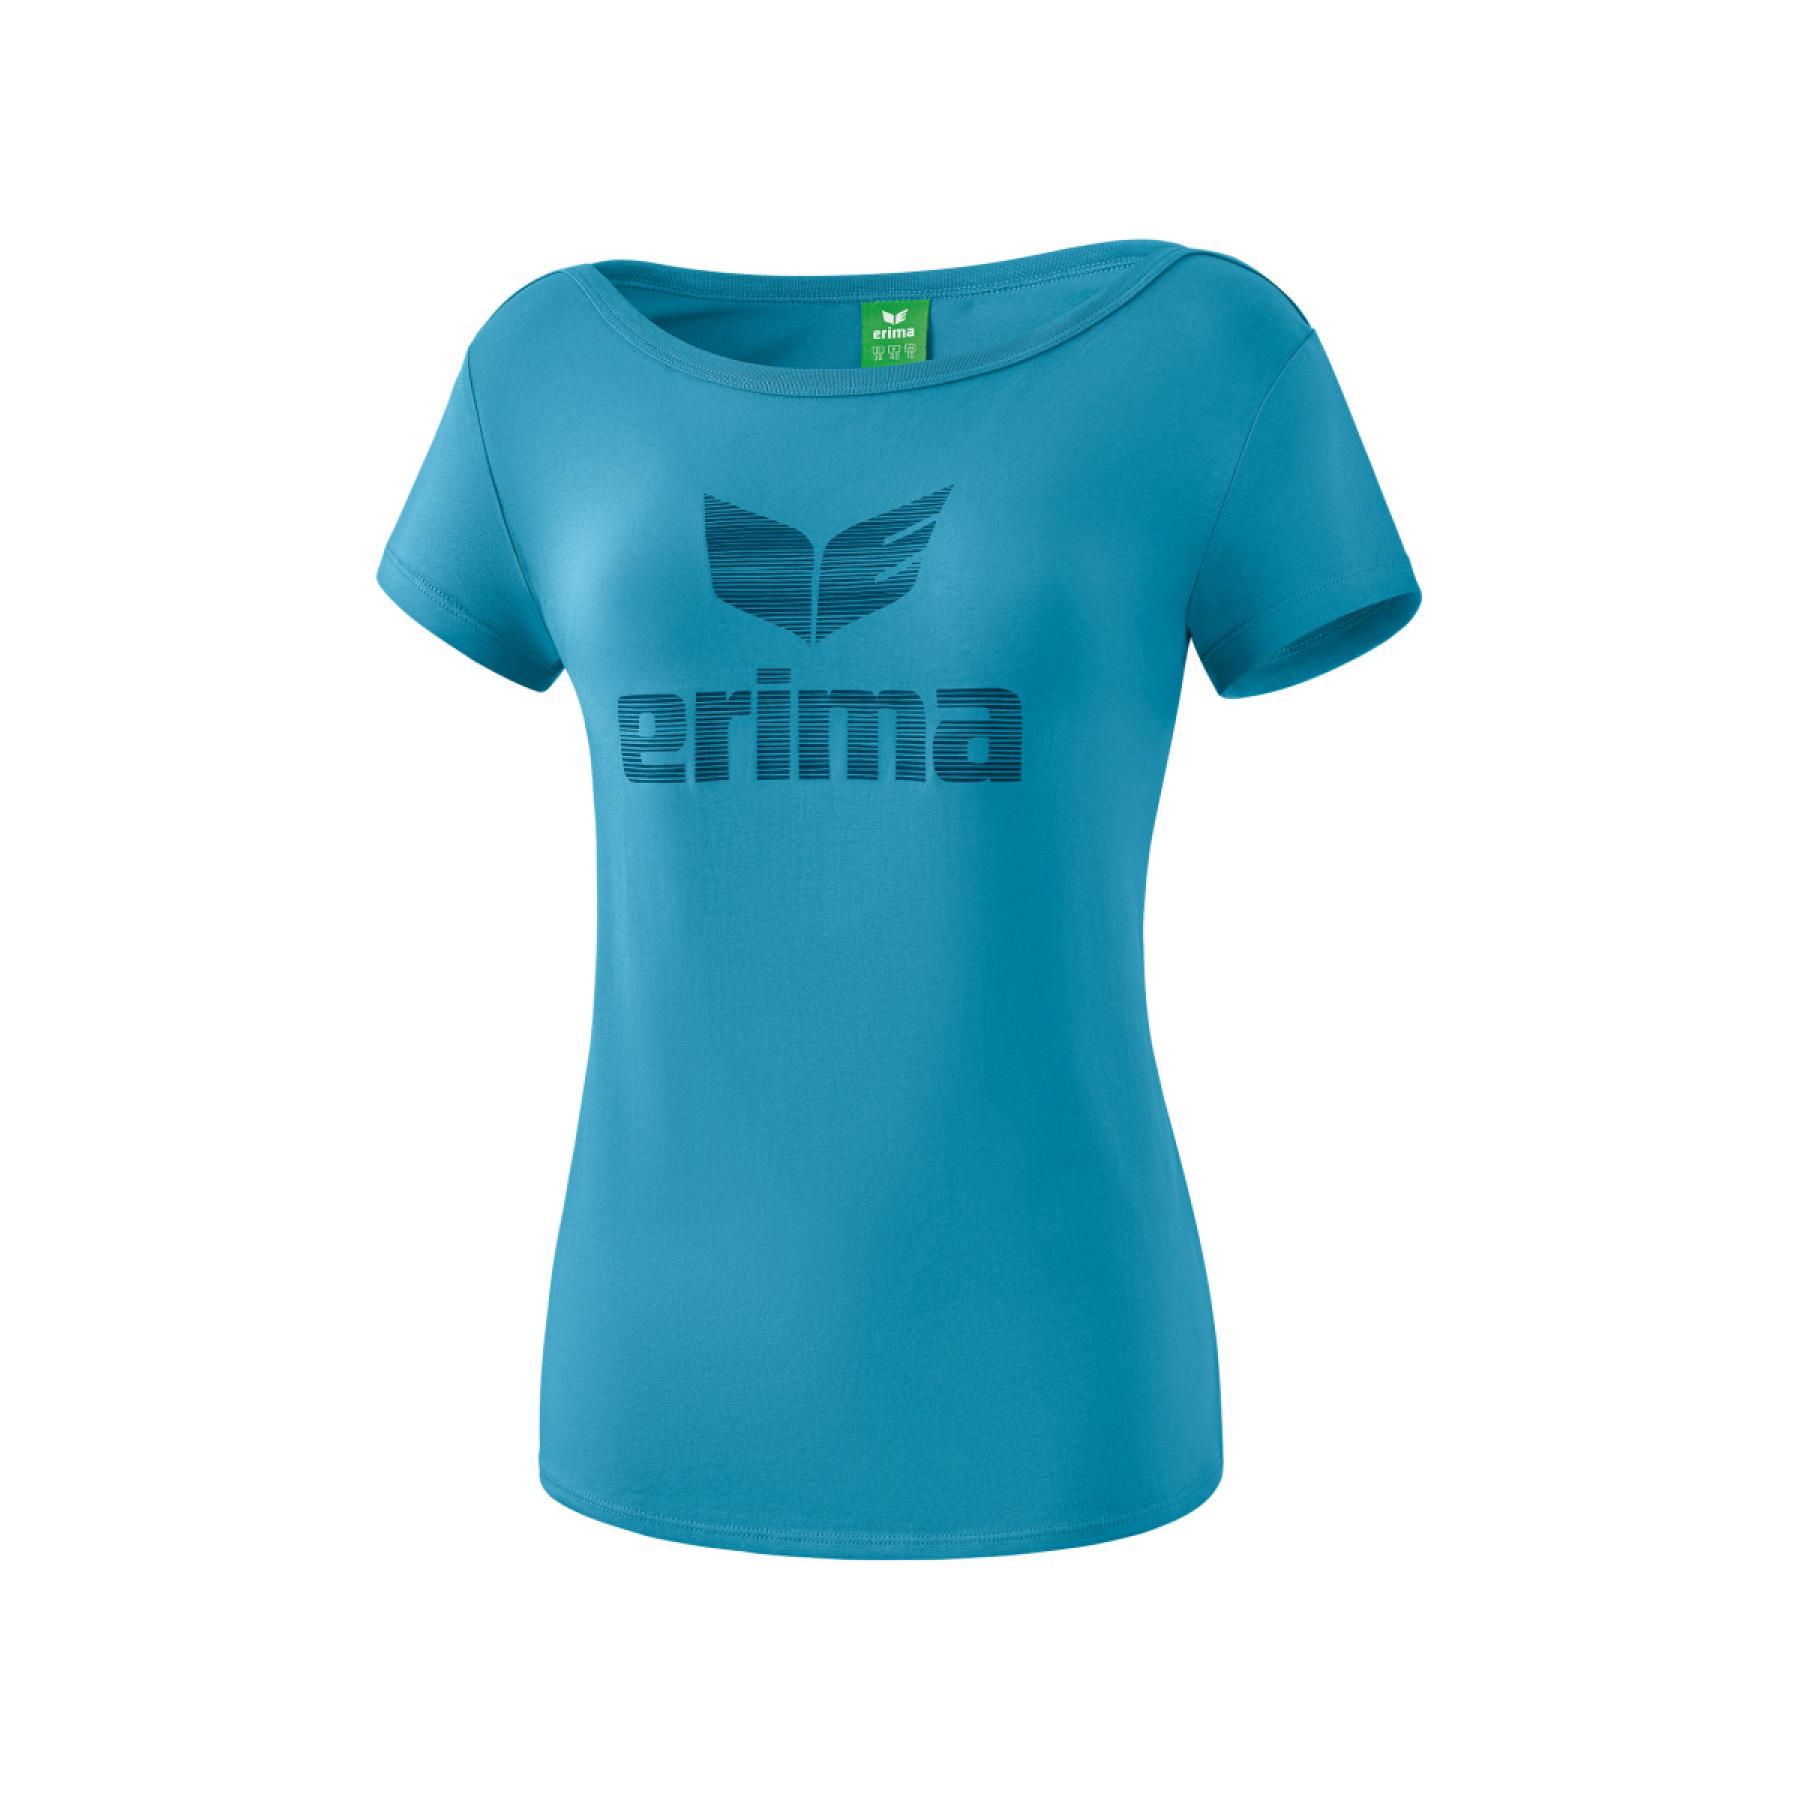 Maglietta da donna Erima essential à logo